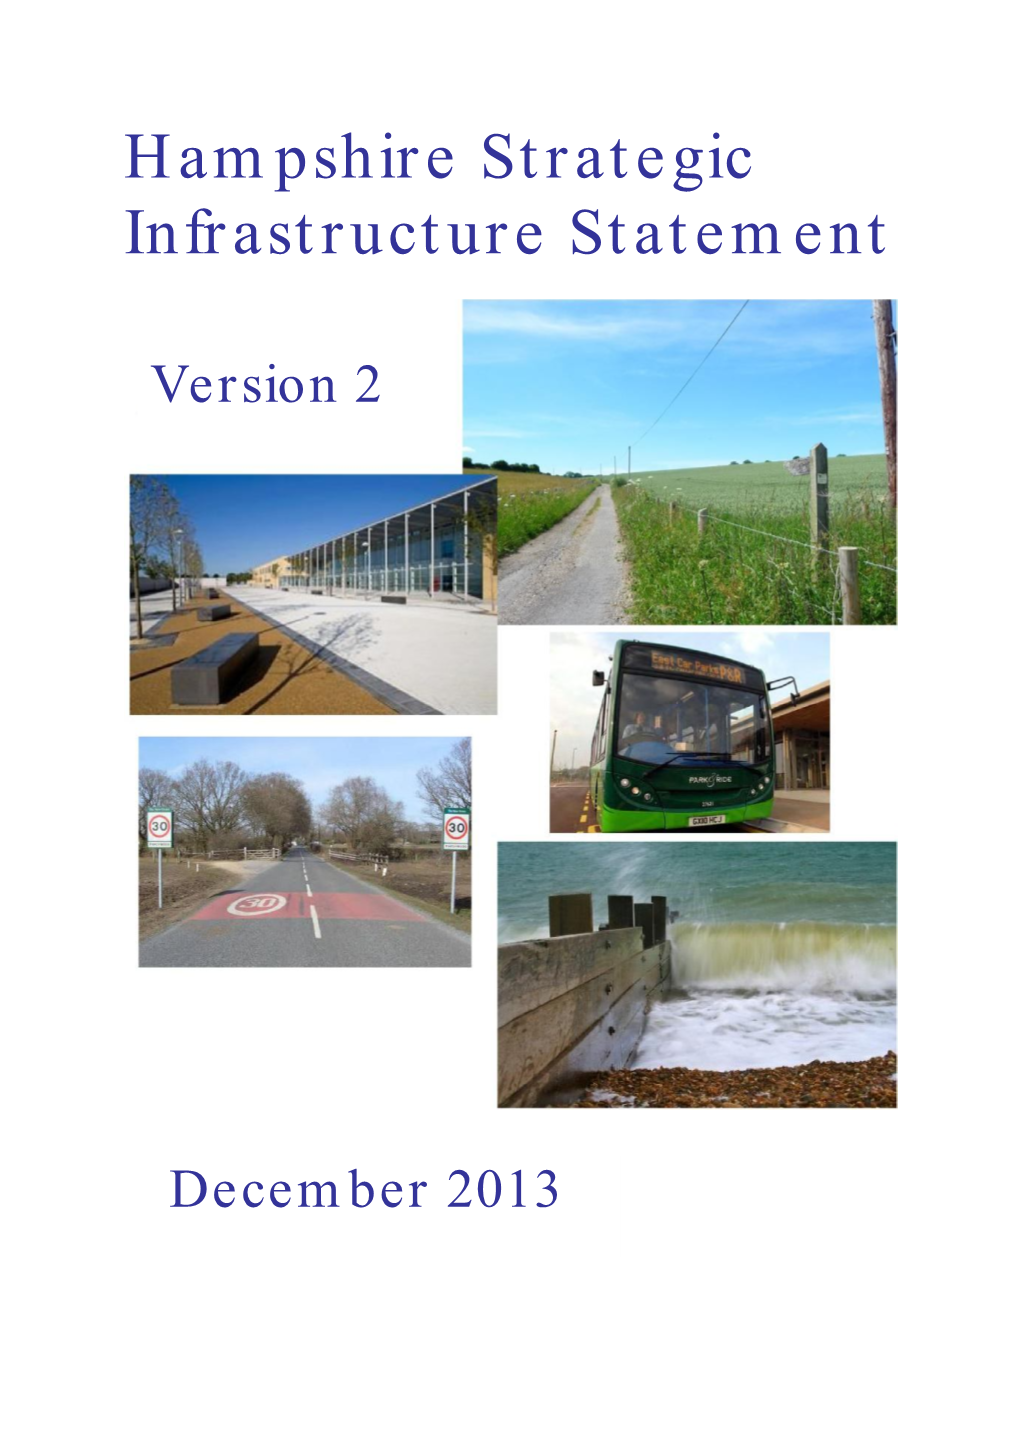 Hampshire Strategic Infrastructure Statement Version 2 (December 2013)